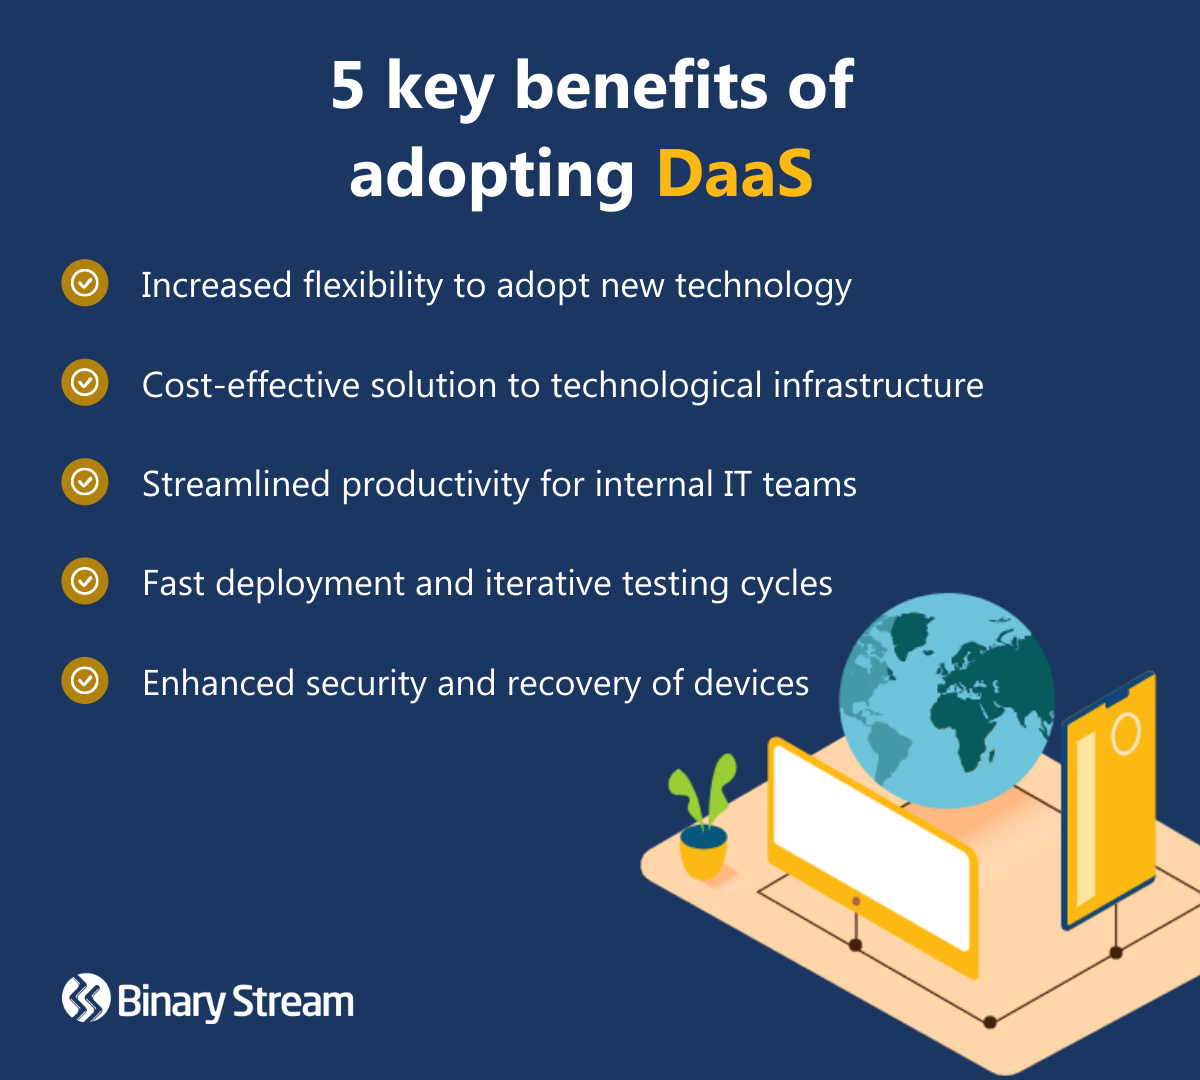 Key benefits of adopting DaaS